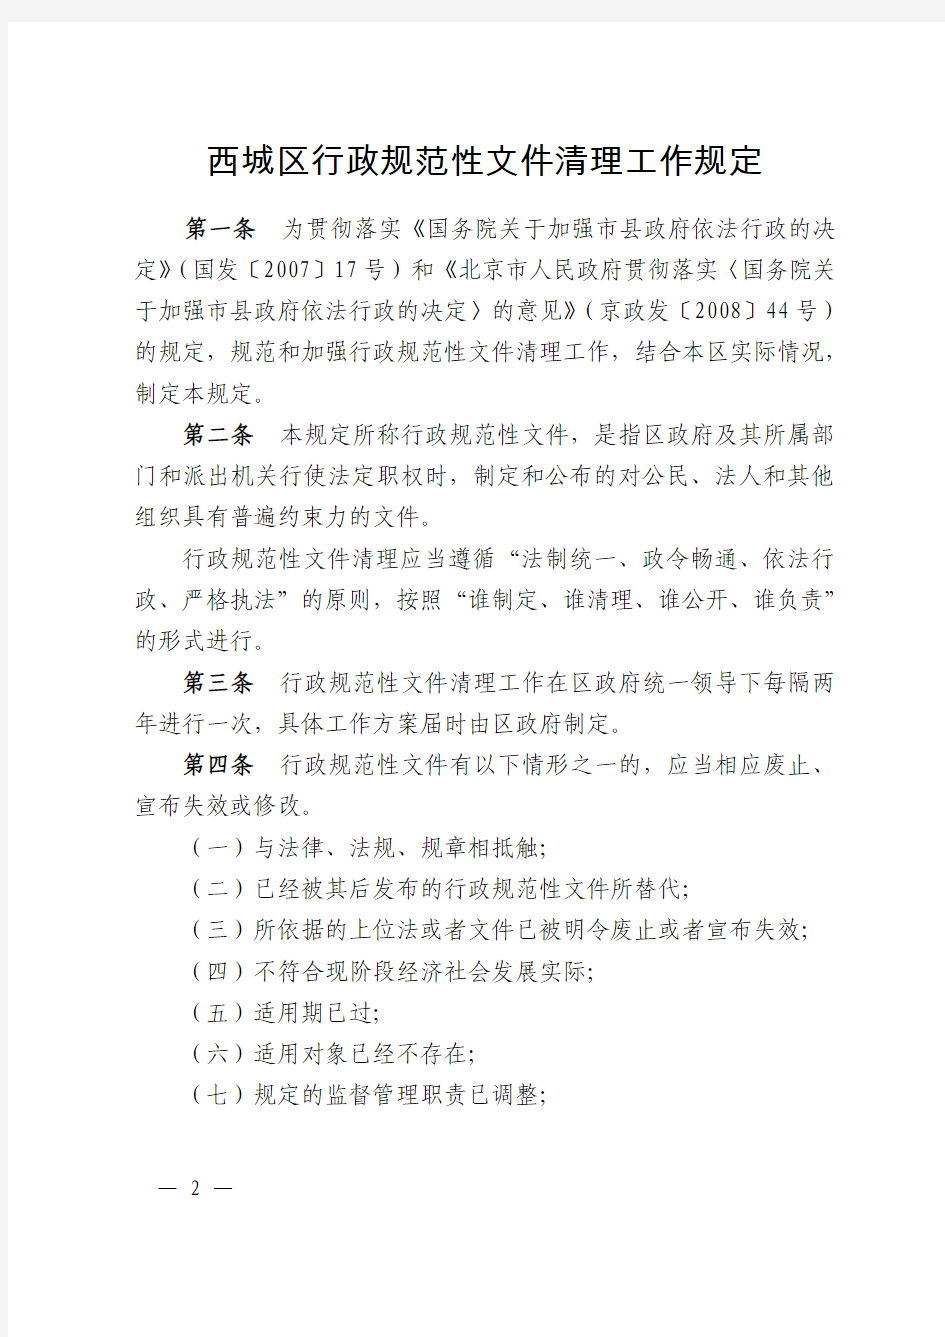 北京市西城区人民政府关于印发《西城区行政规范性文件清理工作规定》和《西城区行政规范性文件实施评估报告